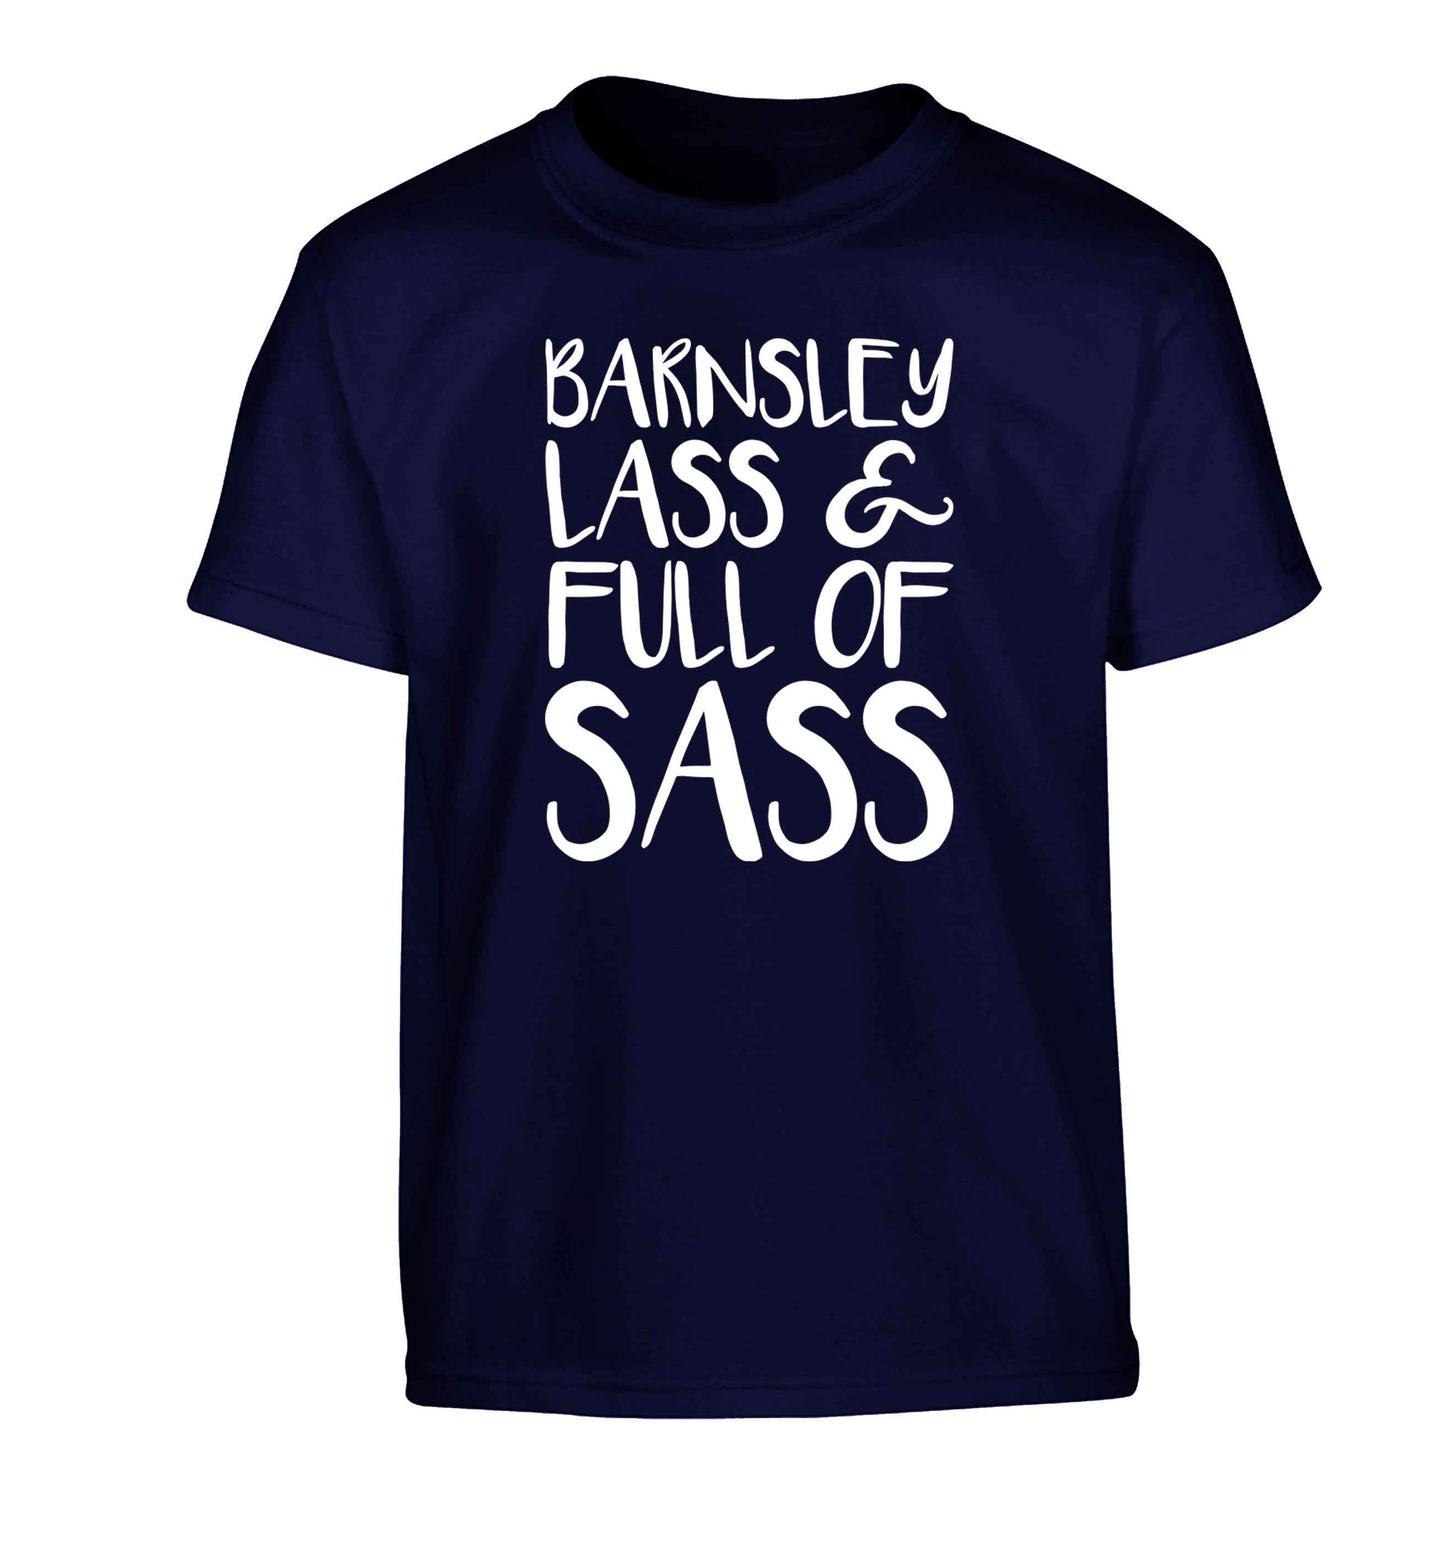 Barnsley lass and full of sass Children's navy Tshirt 12-13 Years